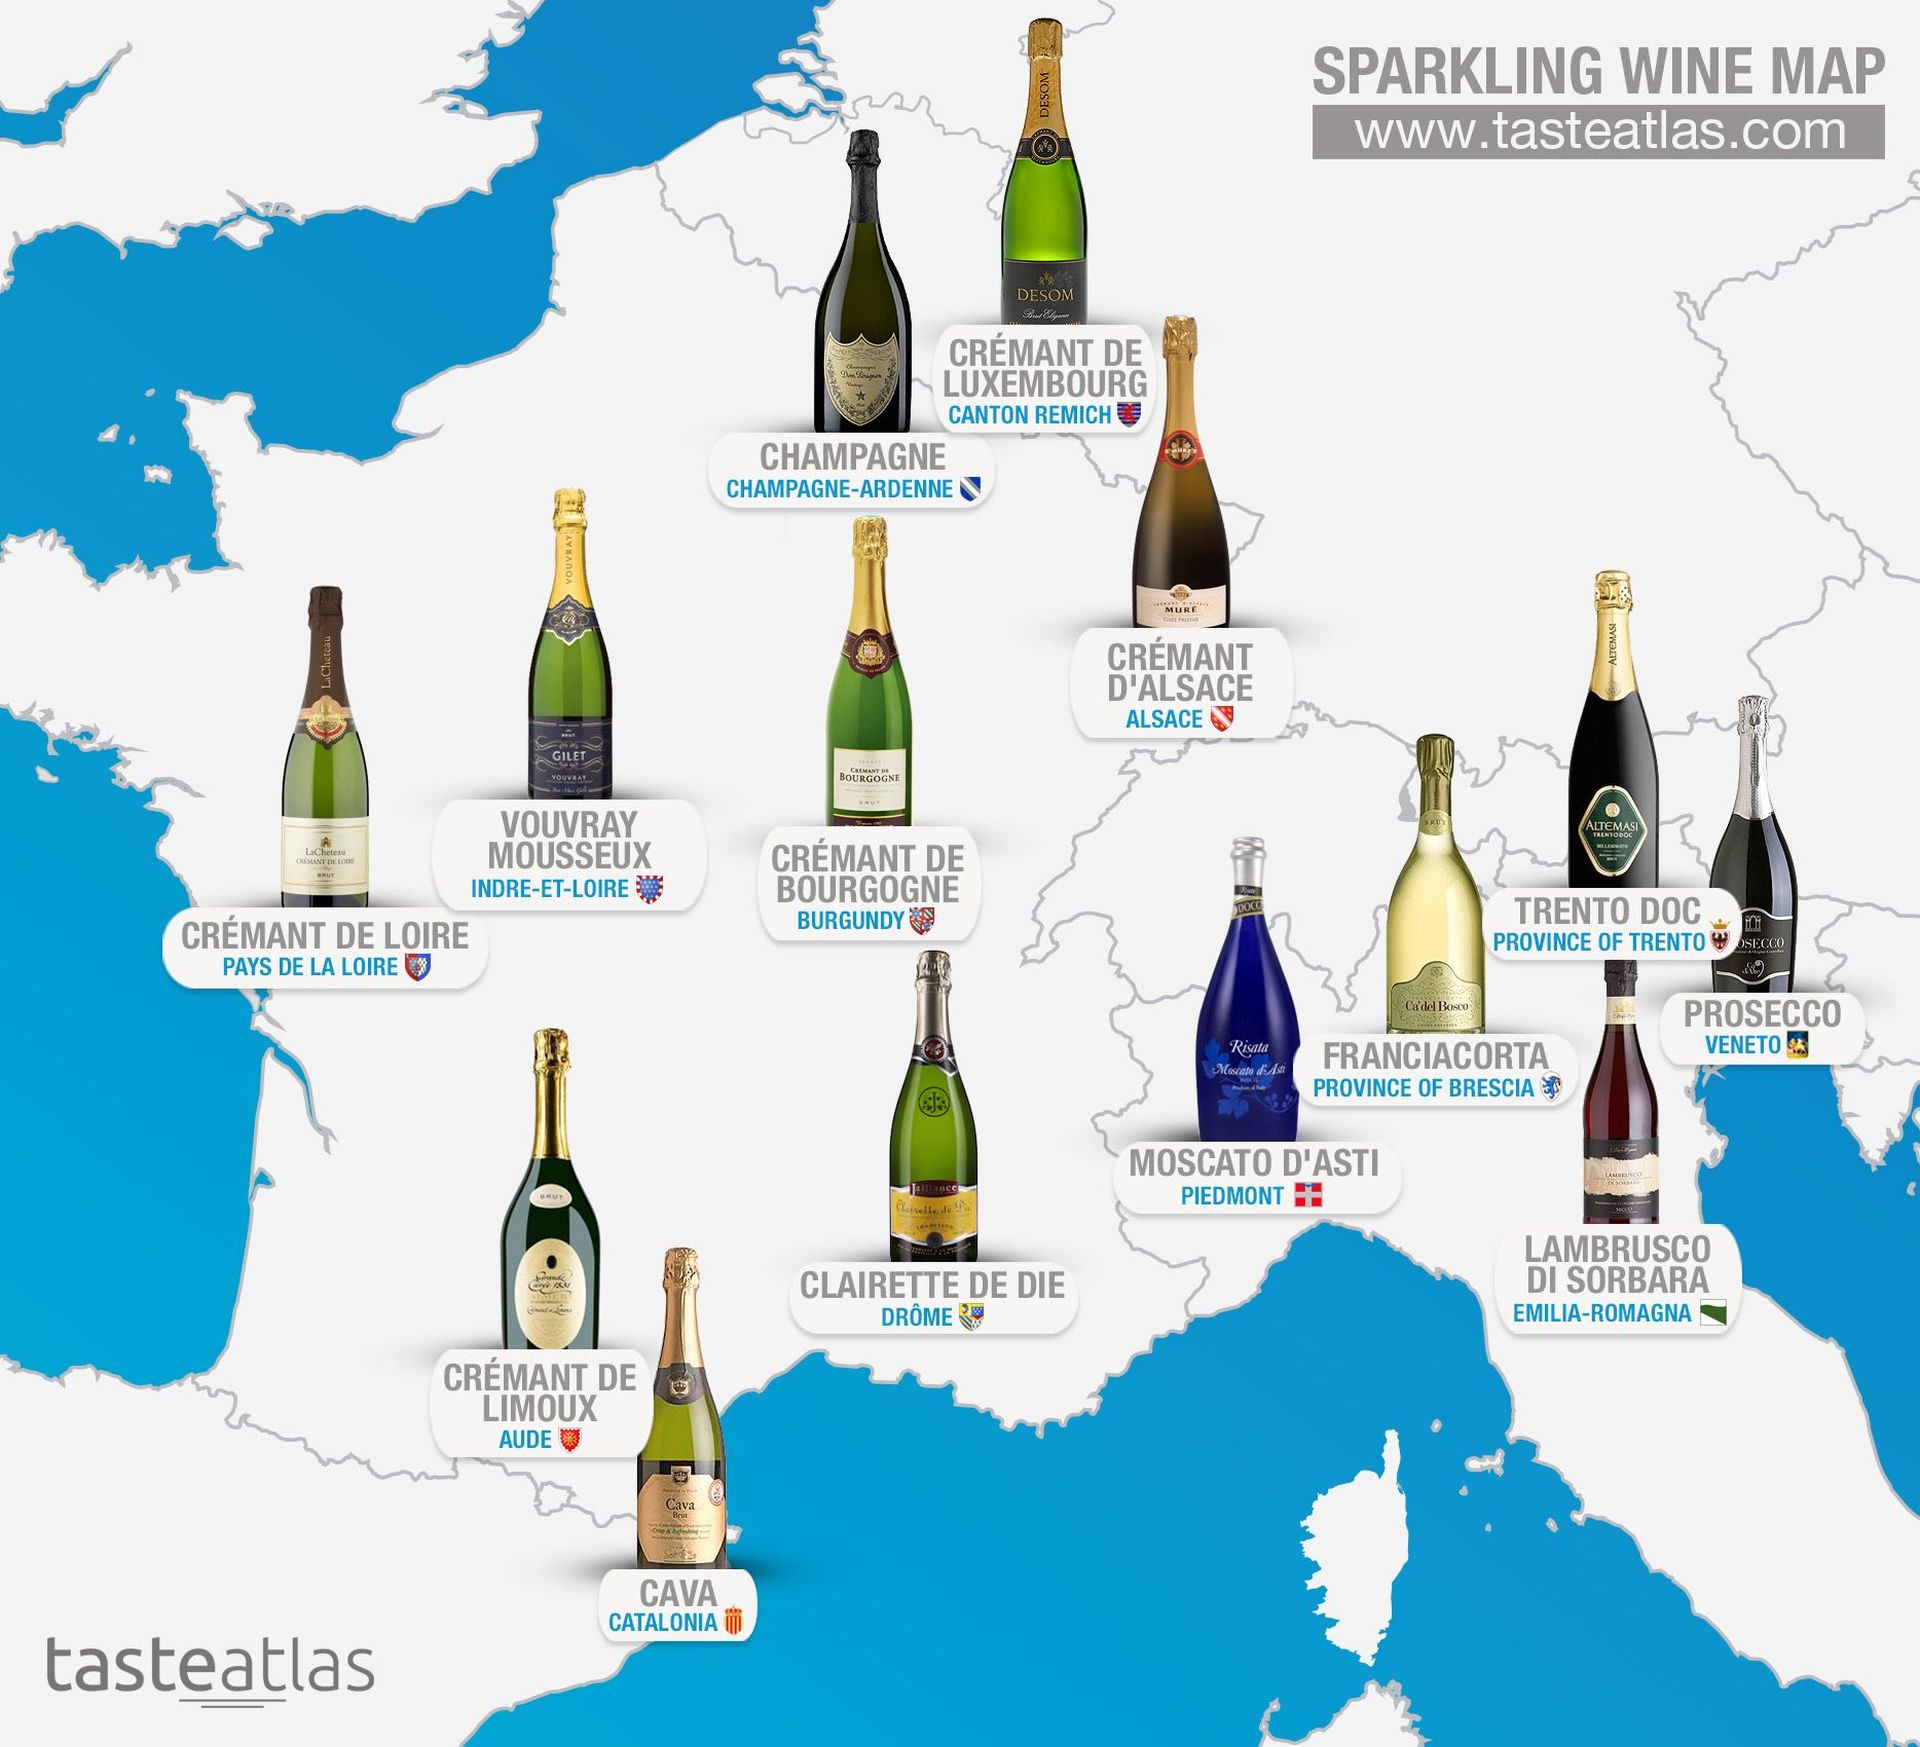 sparkling wine regions - taste atlas